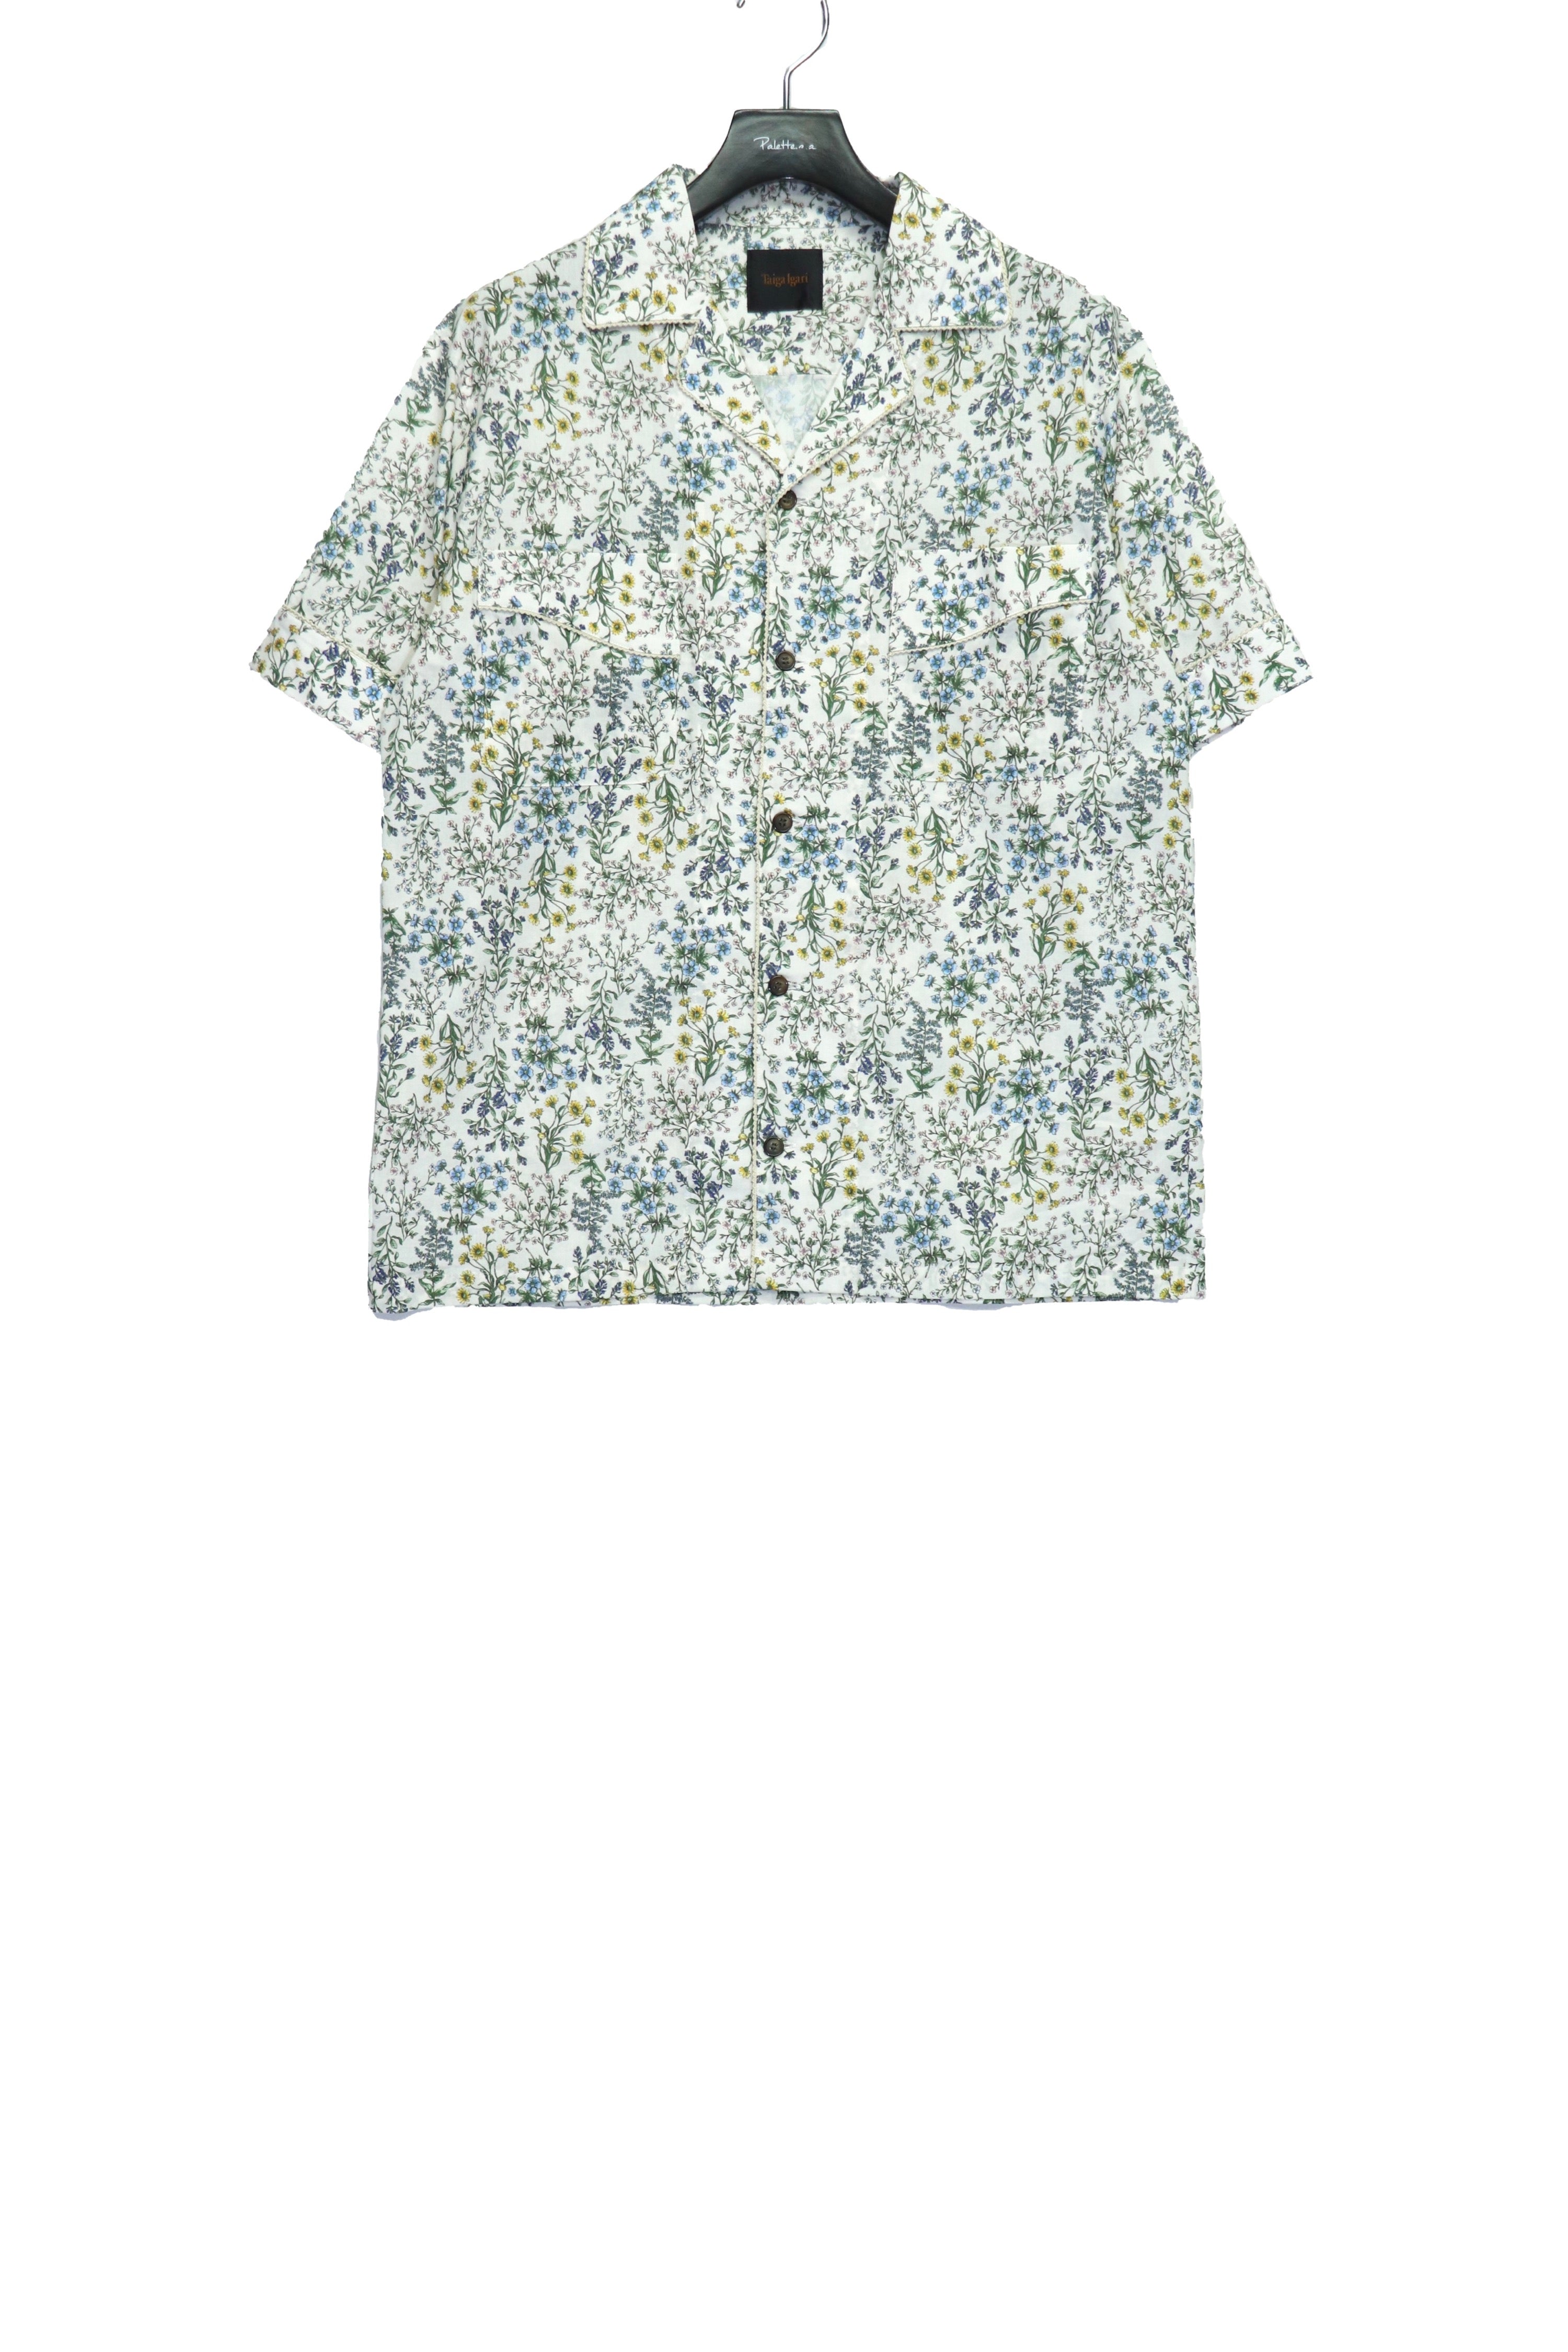 Taiga Igari(タイガ イガリ)の22ss Dairy Pajamas Shirt WHITEの通販